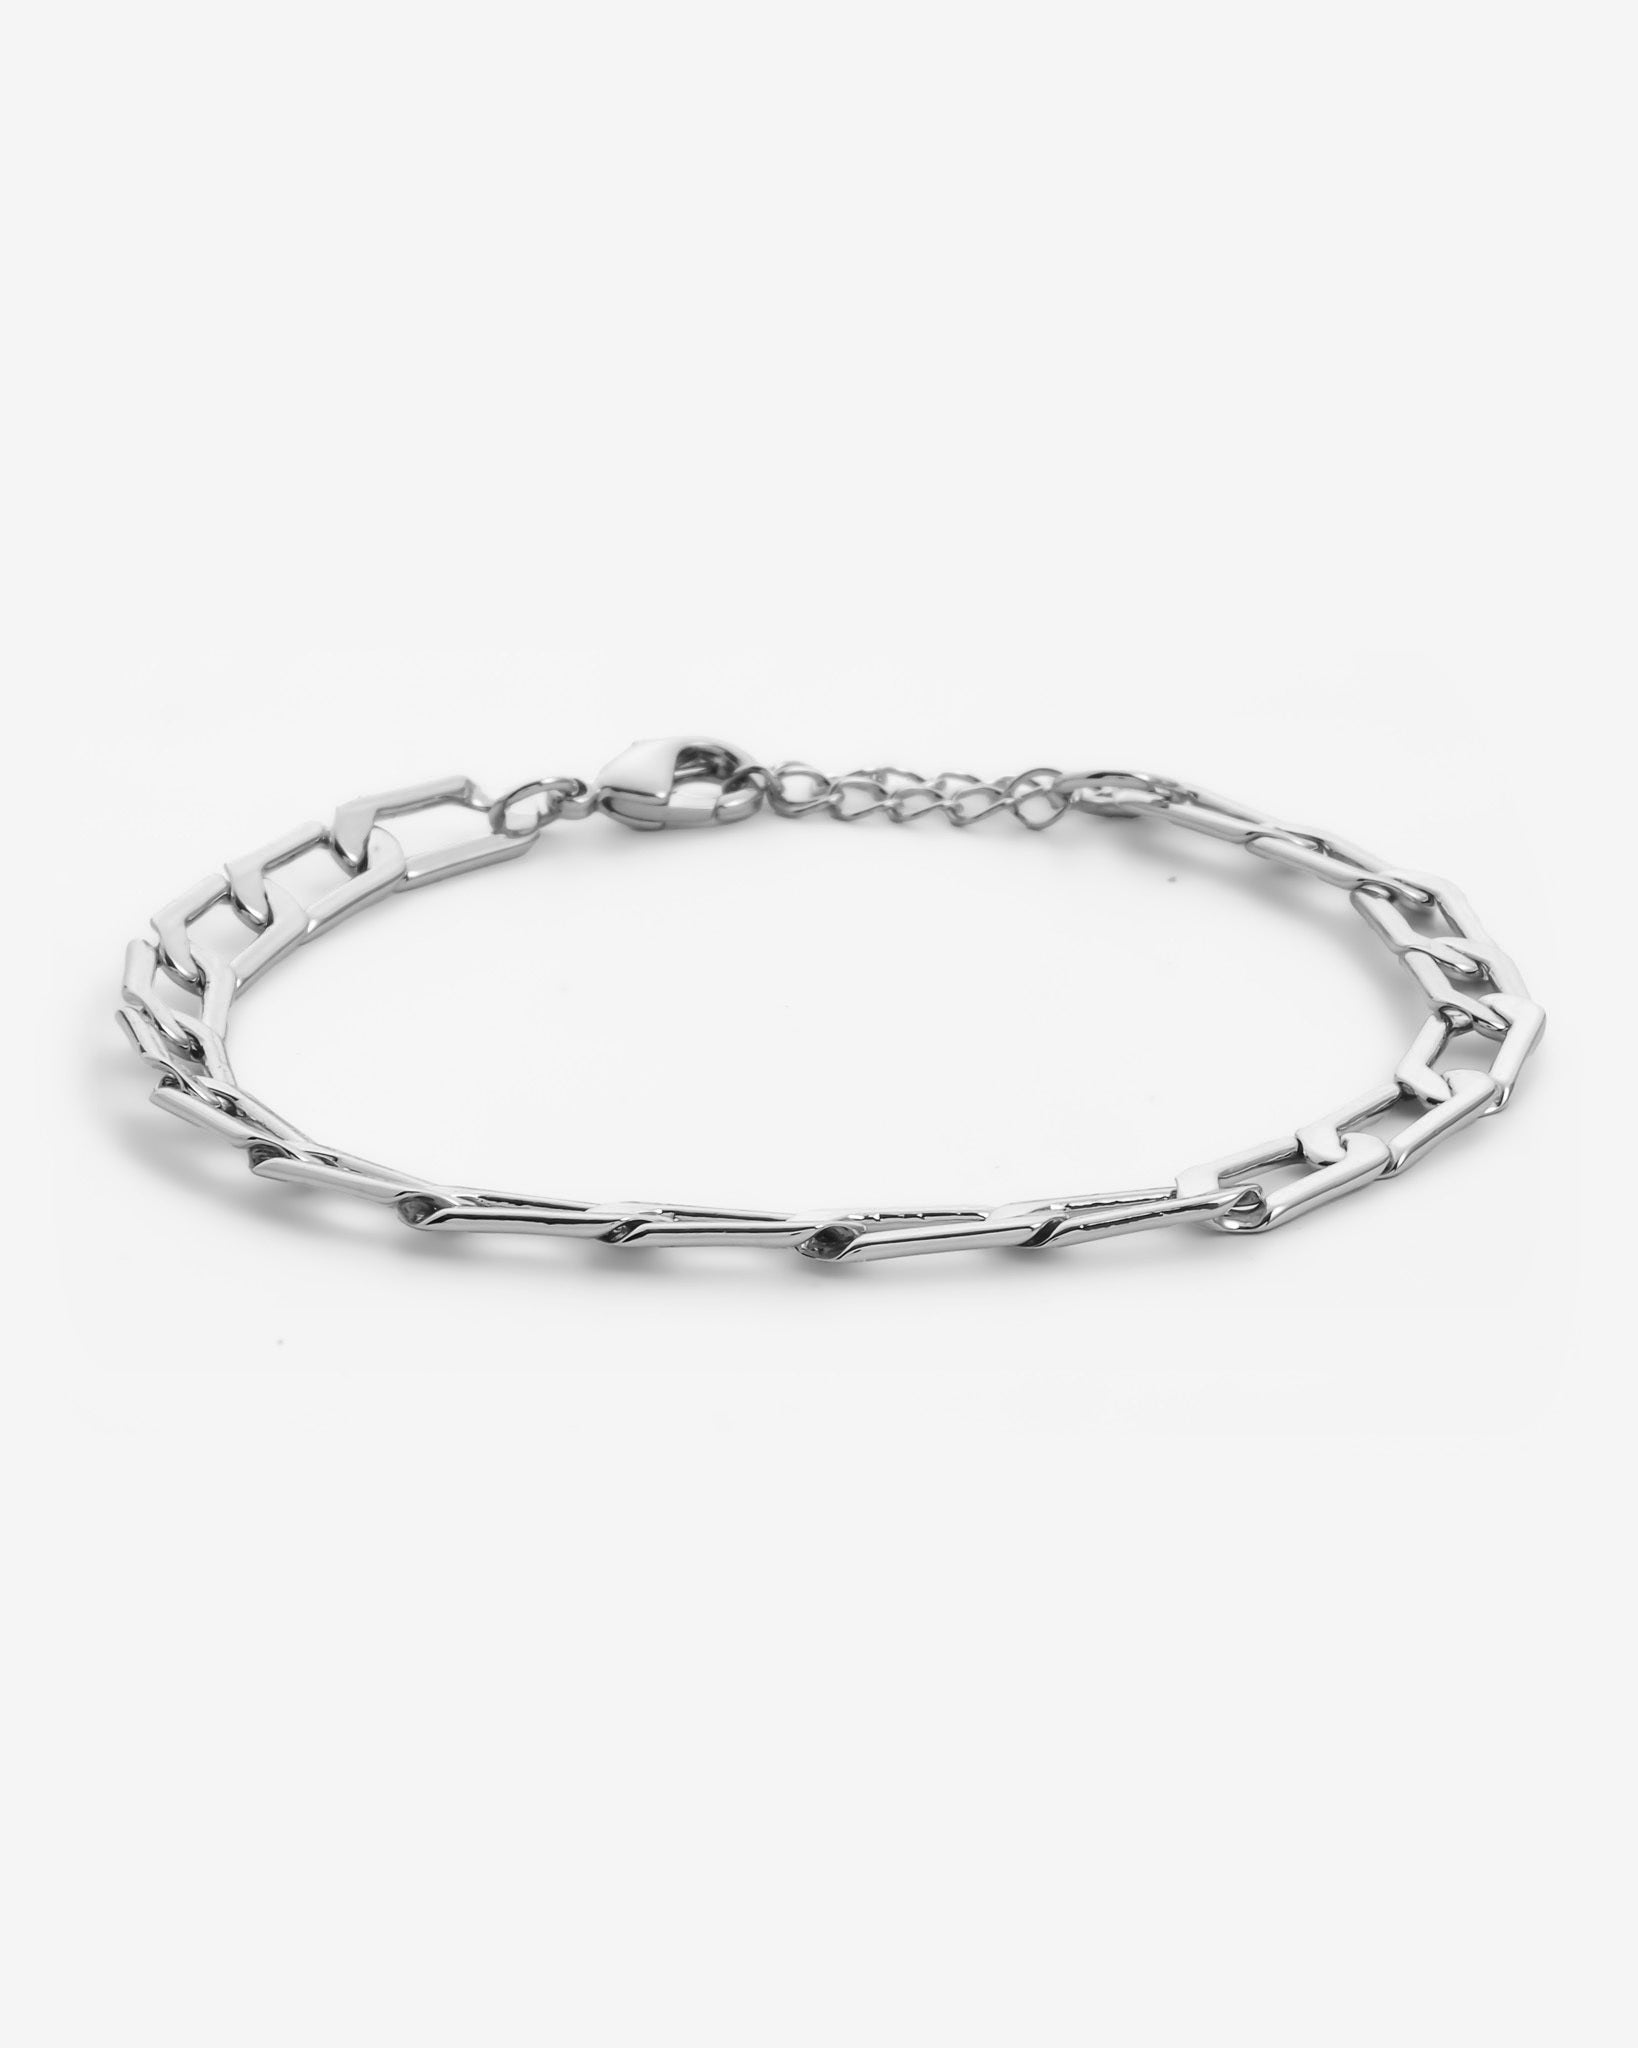 Chain Link Bracelet – Cernucci